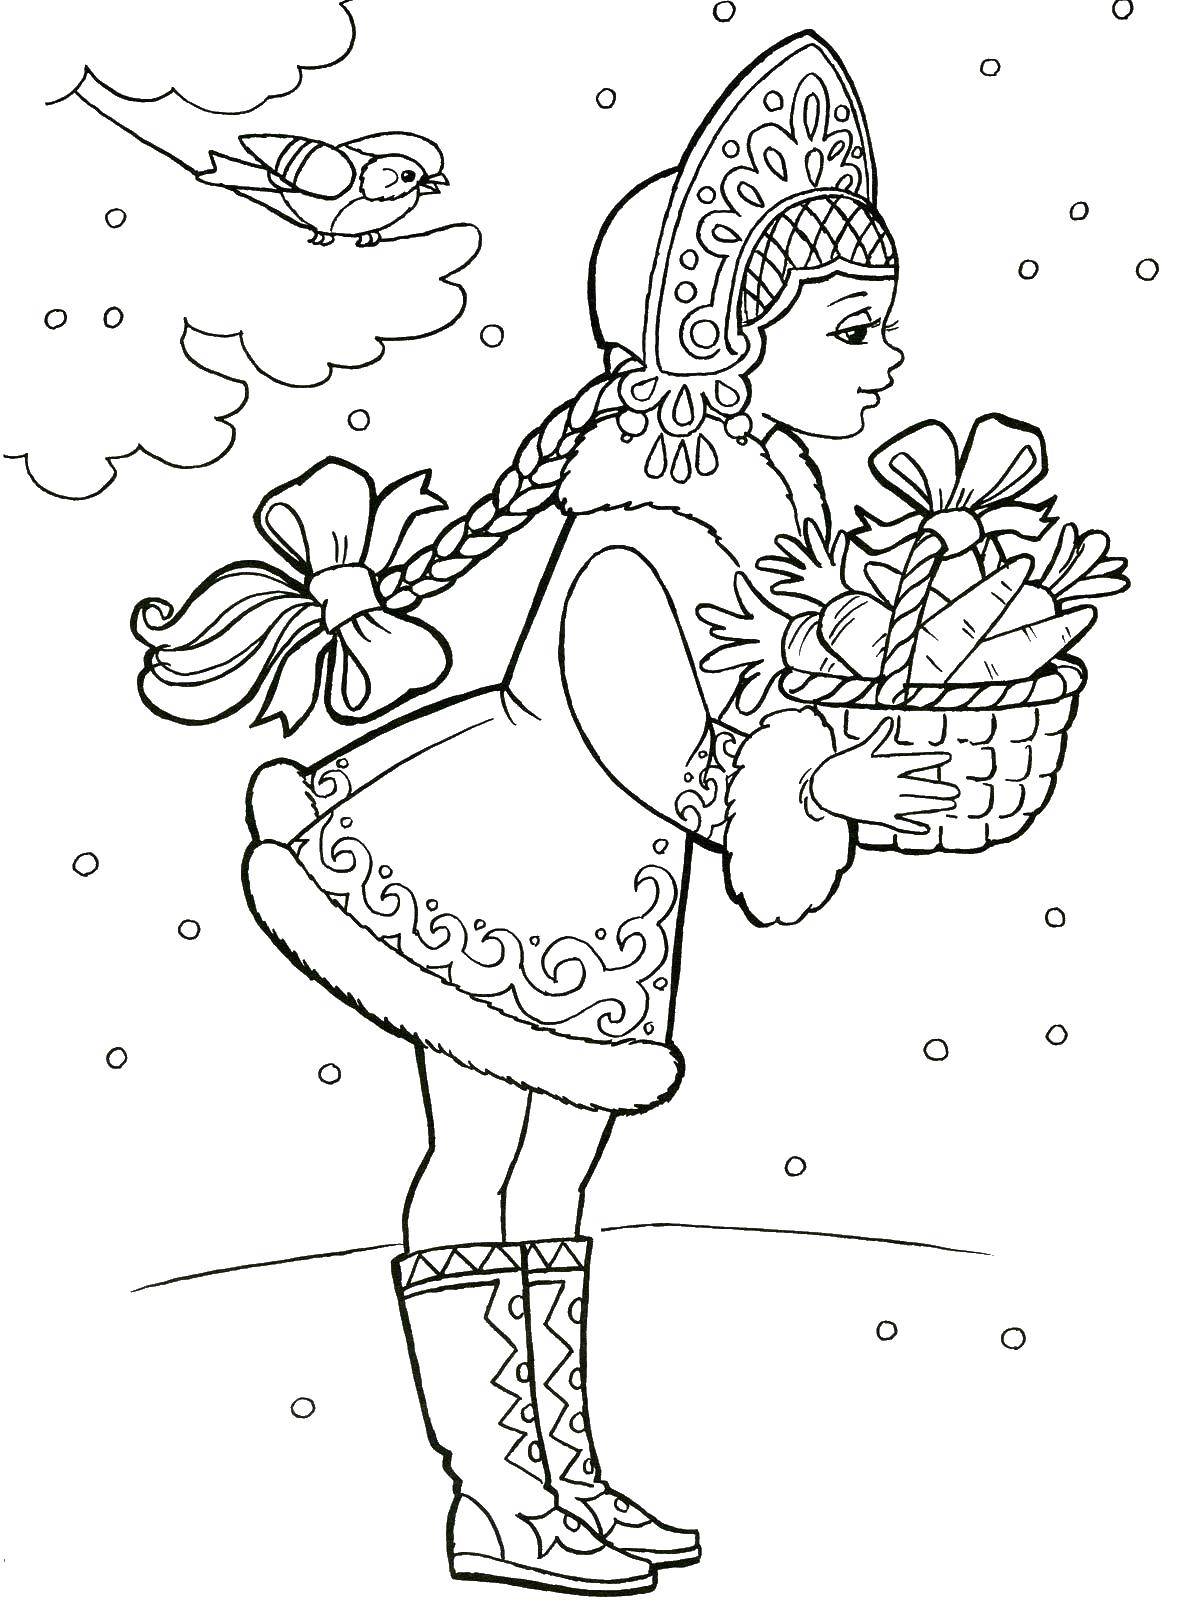 Название: Раскраска Снегурочка. Категория: новый год. Теги: Новый Год, Дед Мороз, подарки, Снегурочка.